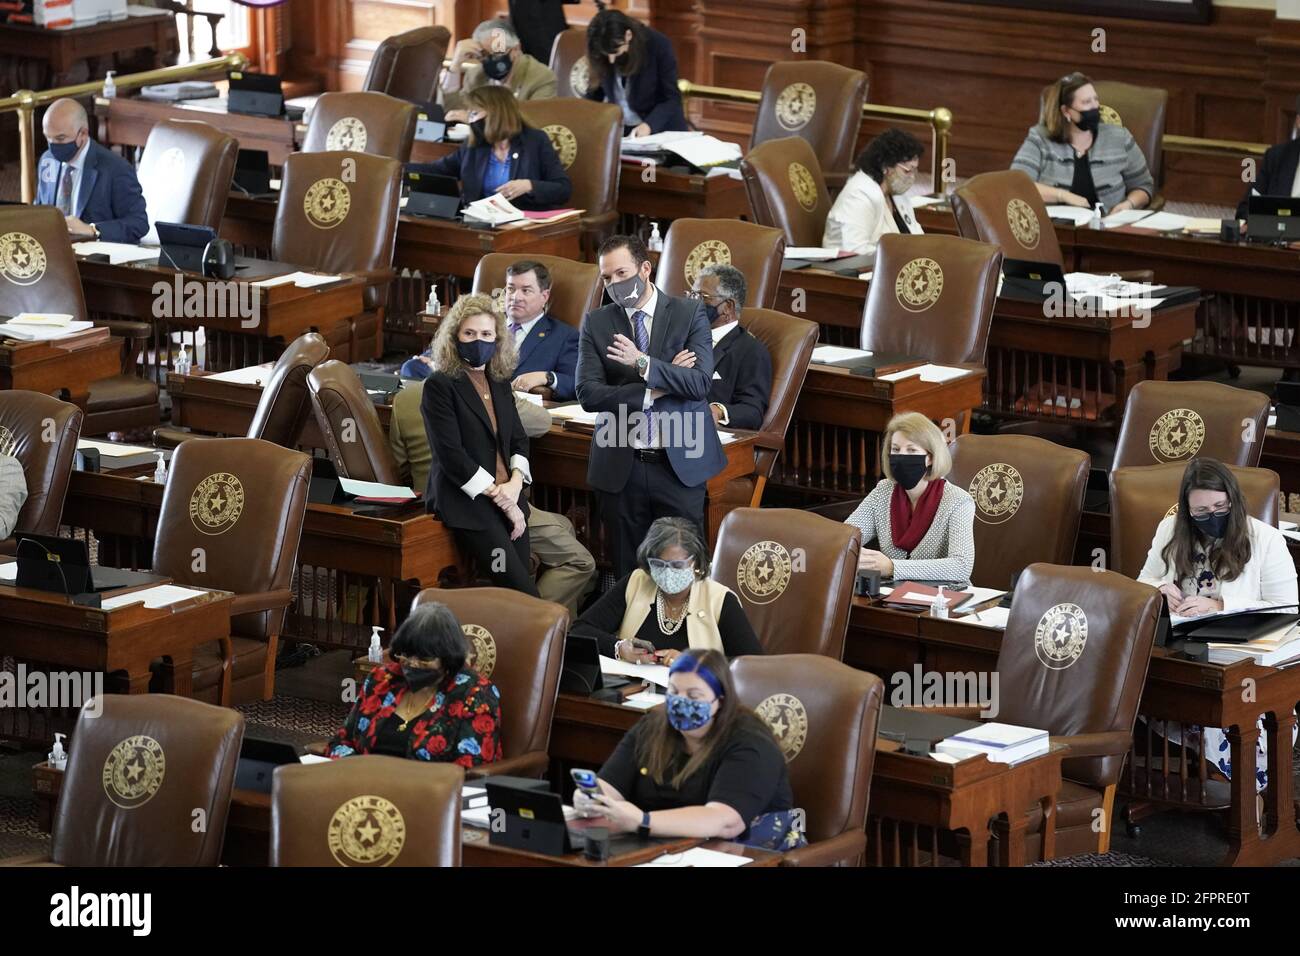 Les législateurs de la Maison du Texas travaillent à négocier, à rédiger des lois et à adopter des projets de loi à la 87e session de l'Assemblée législative du Texas à Austin. Chacun des 150 membres est élu pour un mandat de deux ans. Banque D'Images